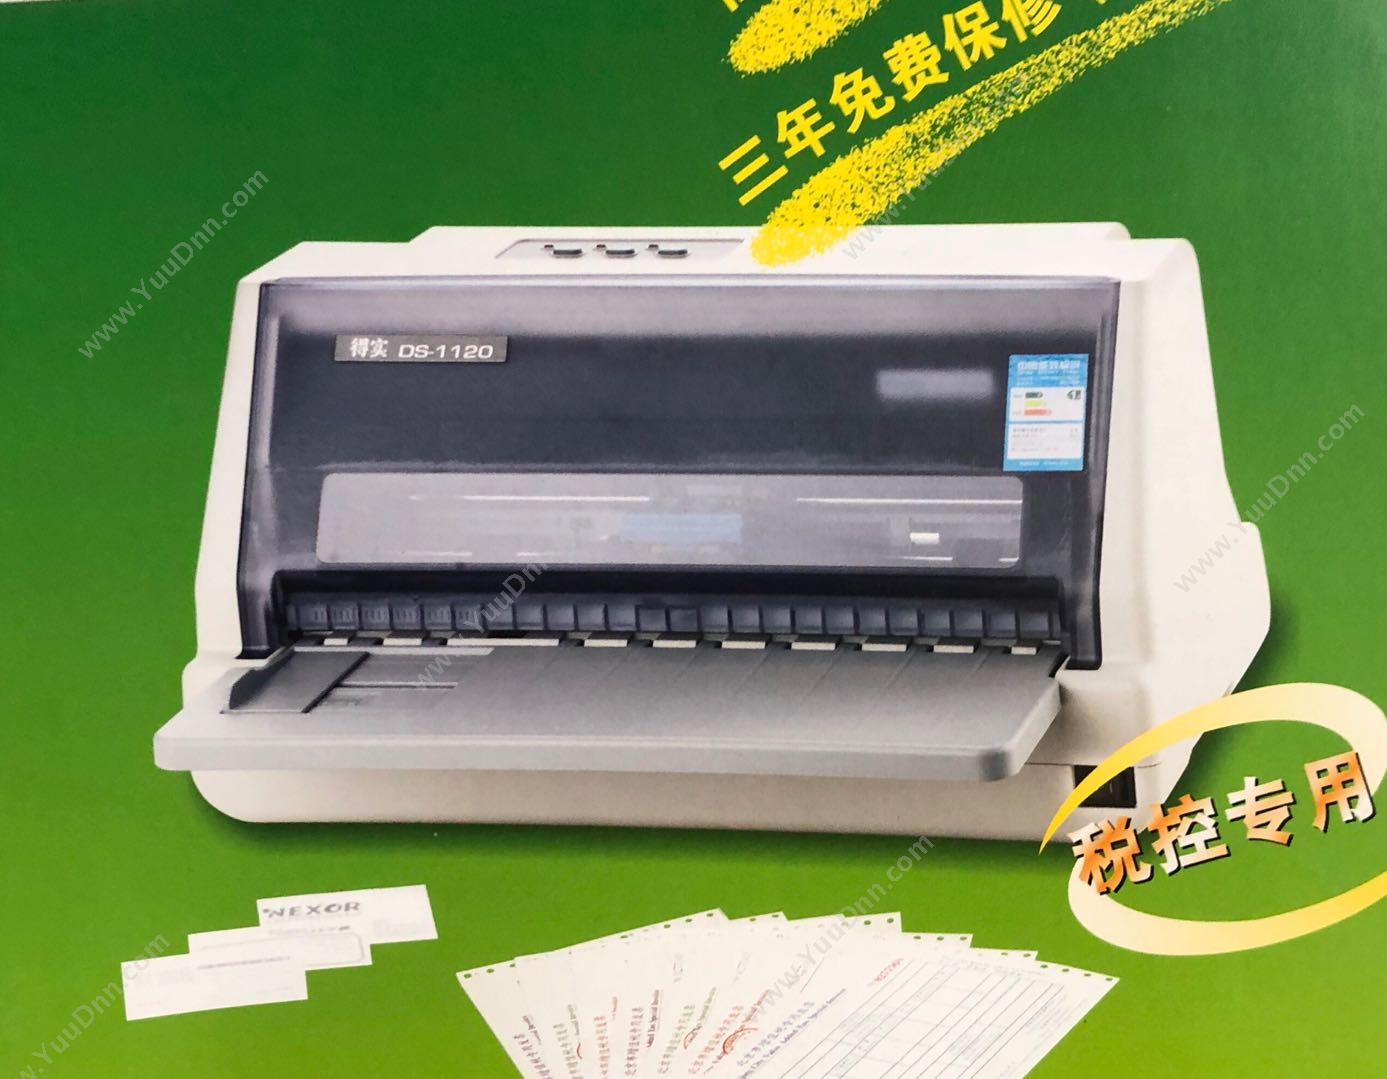 得实 Dascom DS-1120 24针82列税控专用打印机 296(宽)×385长)×200(高)mm 针式打印机